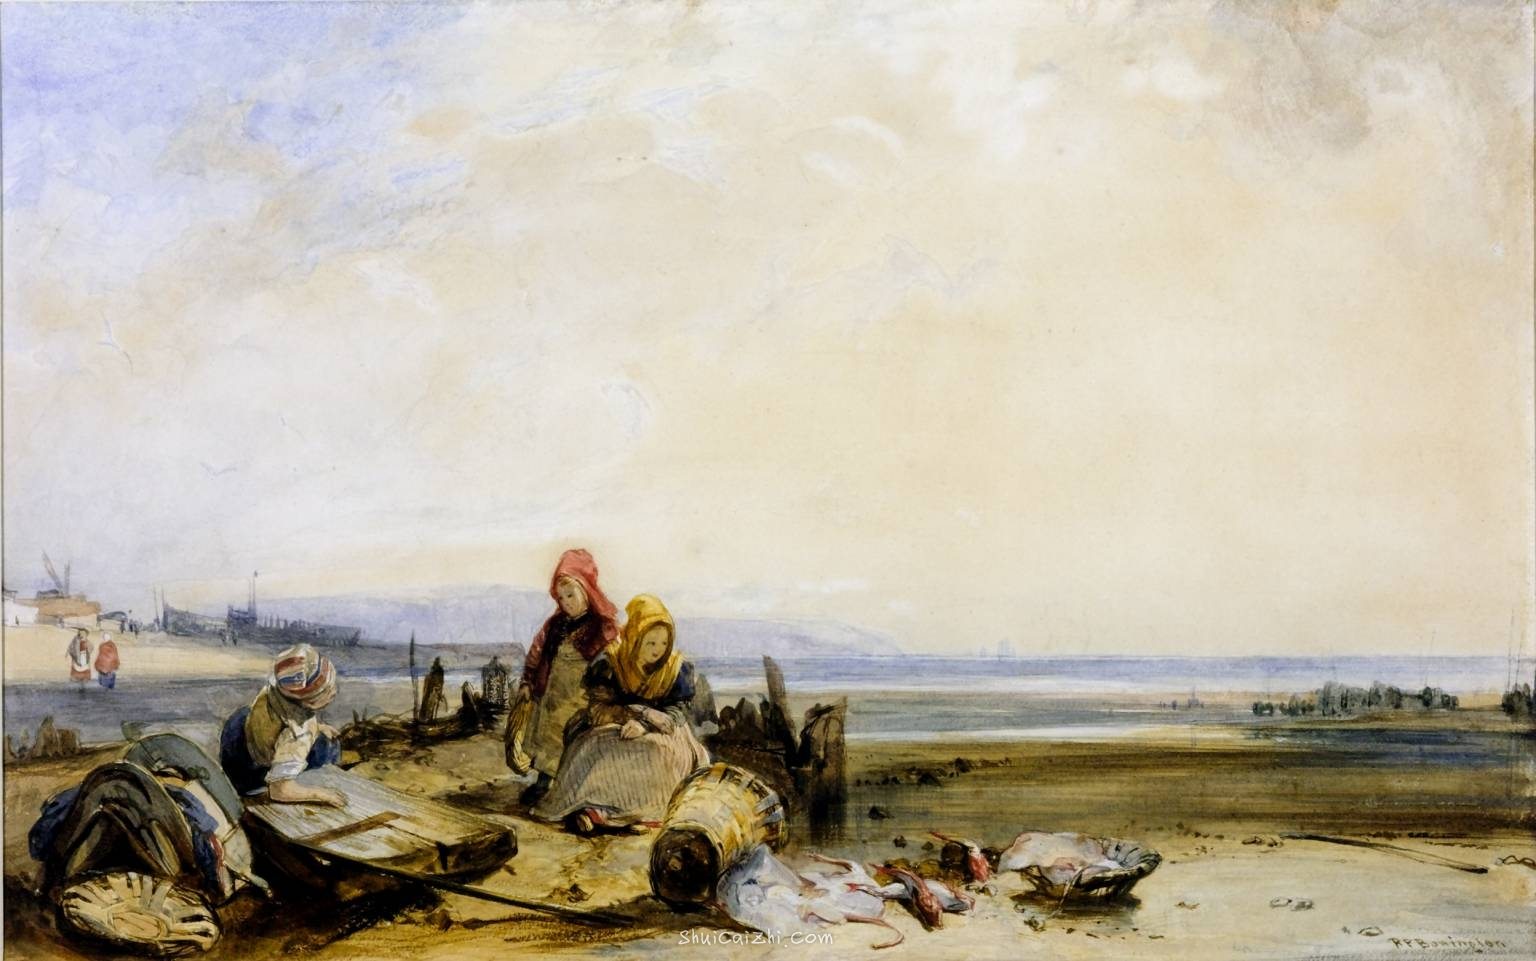 A Scene on the French Coast circa 1825 by Richard Parkes Bonington 1802-1828